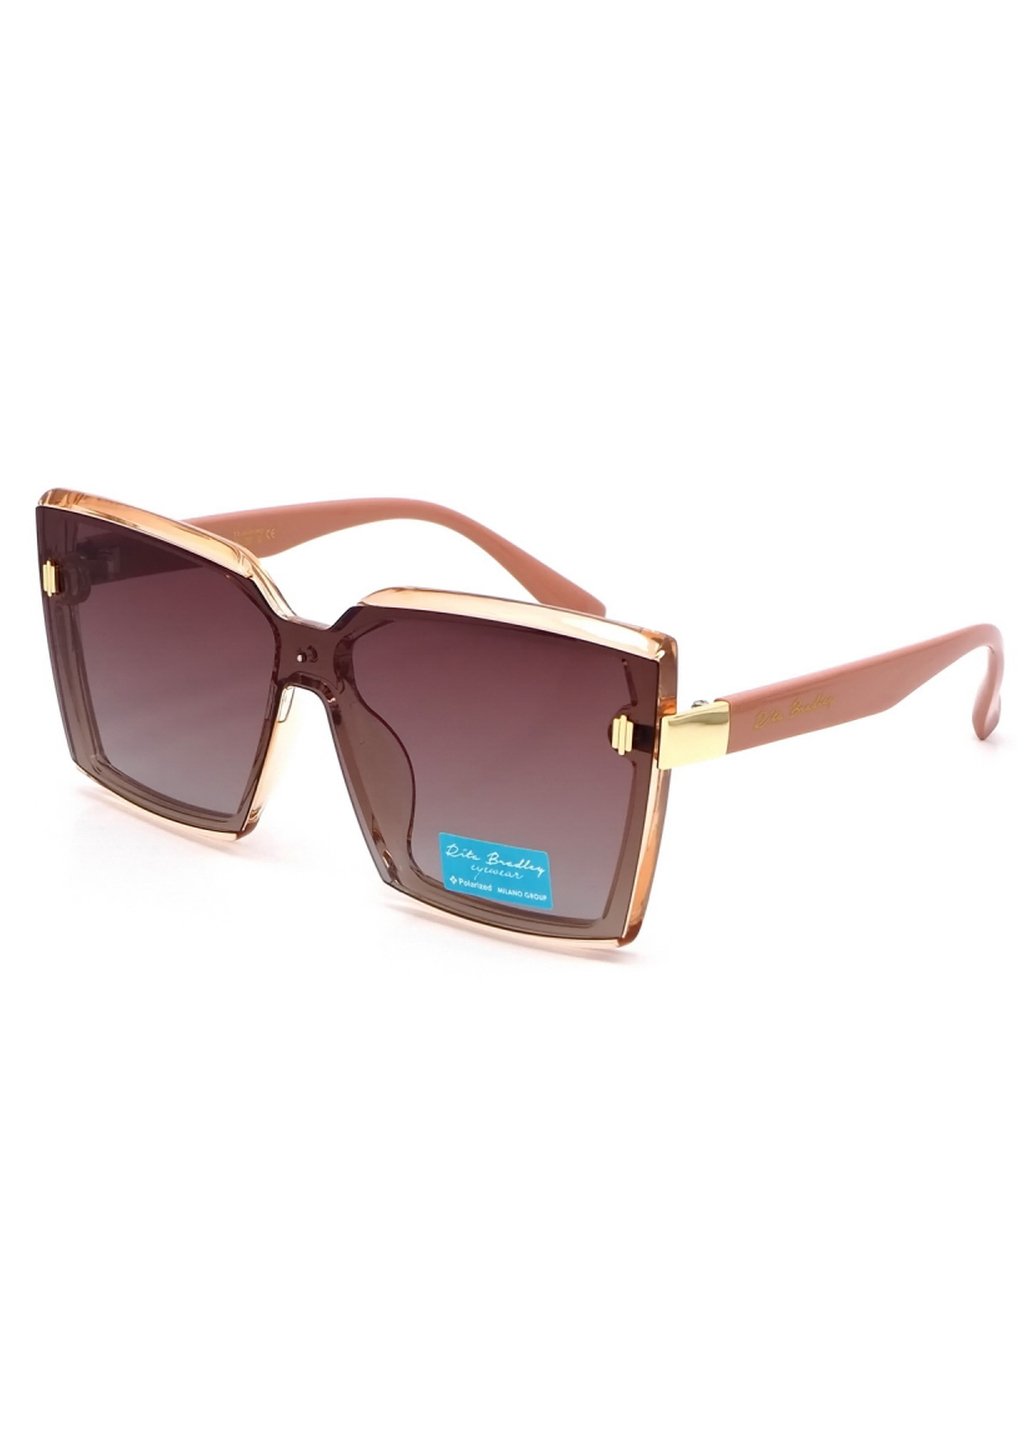 Купить Женские солнцезащитные очки Rita Bradley с поляризацией RB723 112041 в интернет-магазине